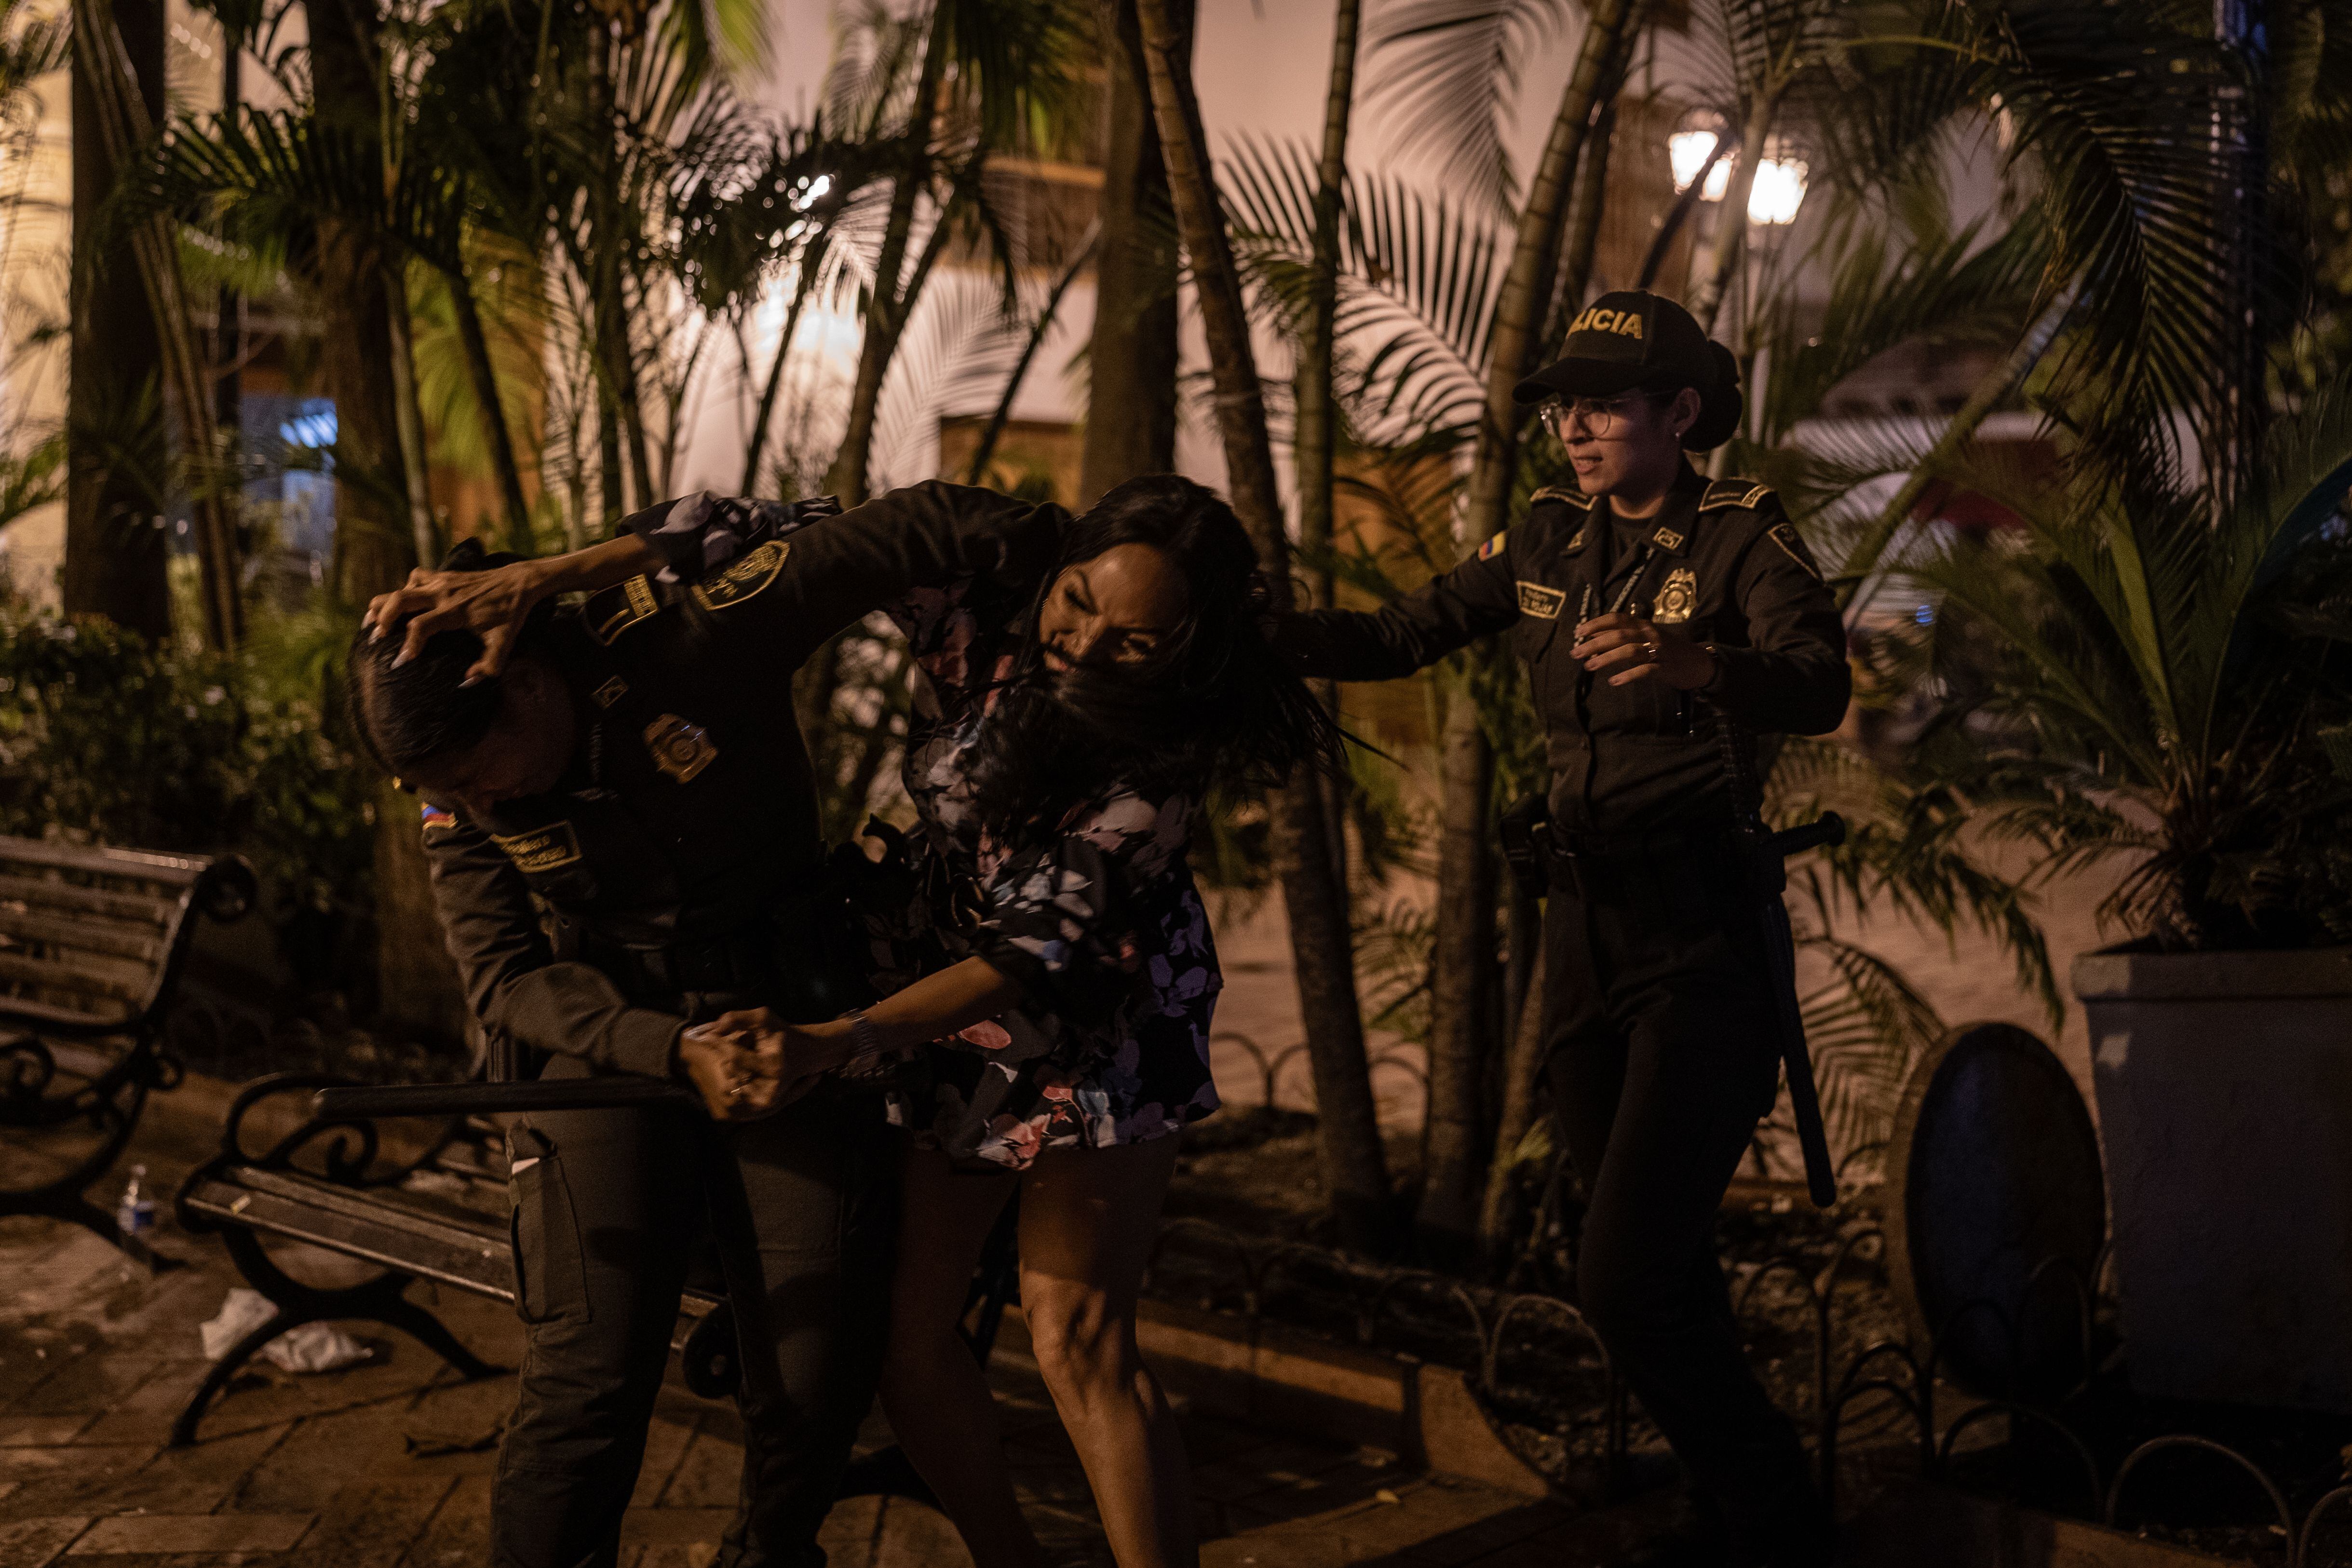 Una trabajadora sexual forcejea con la policía tras ser retirada de una banca en el Centro Histórico de Cartagena, el 22 de febrero.